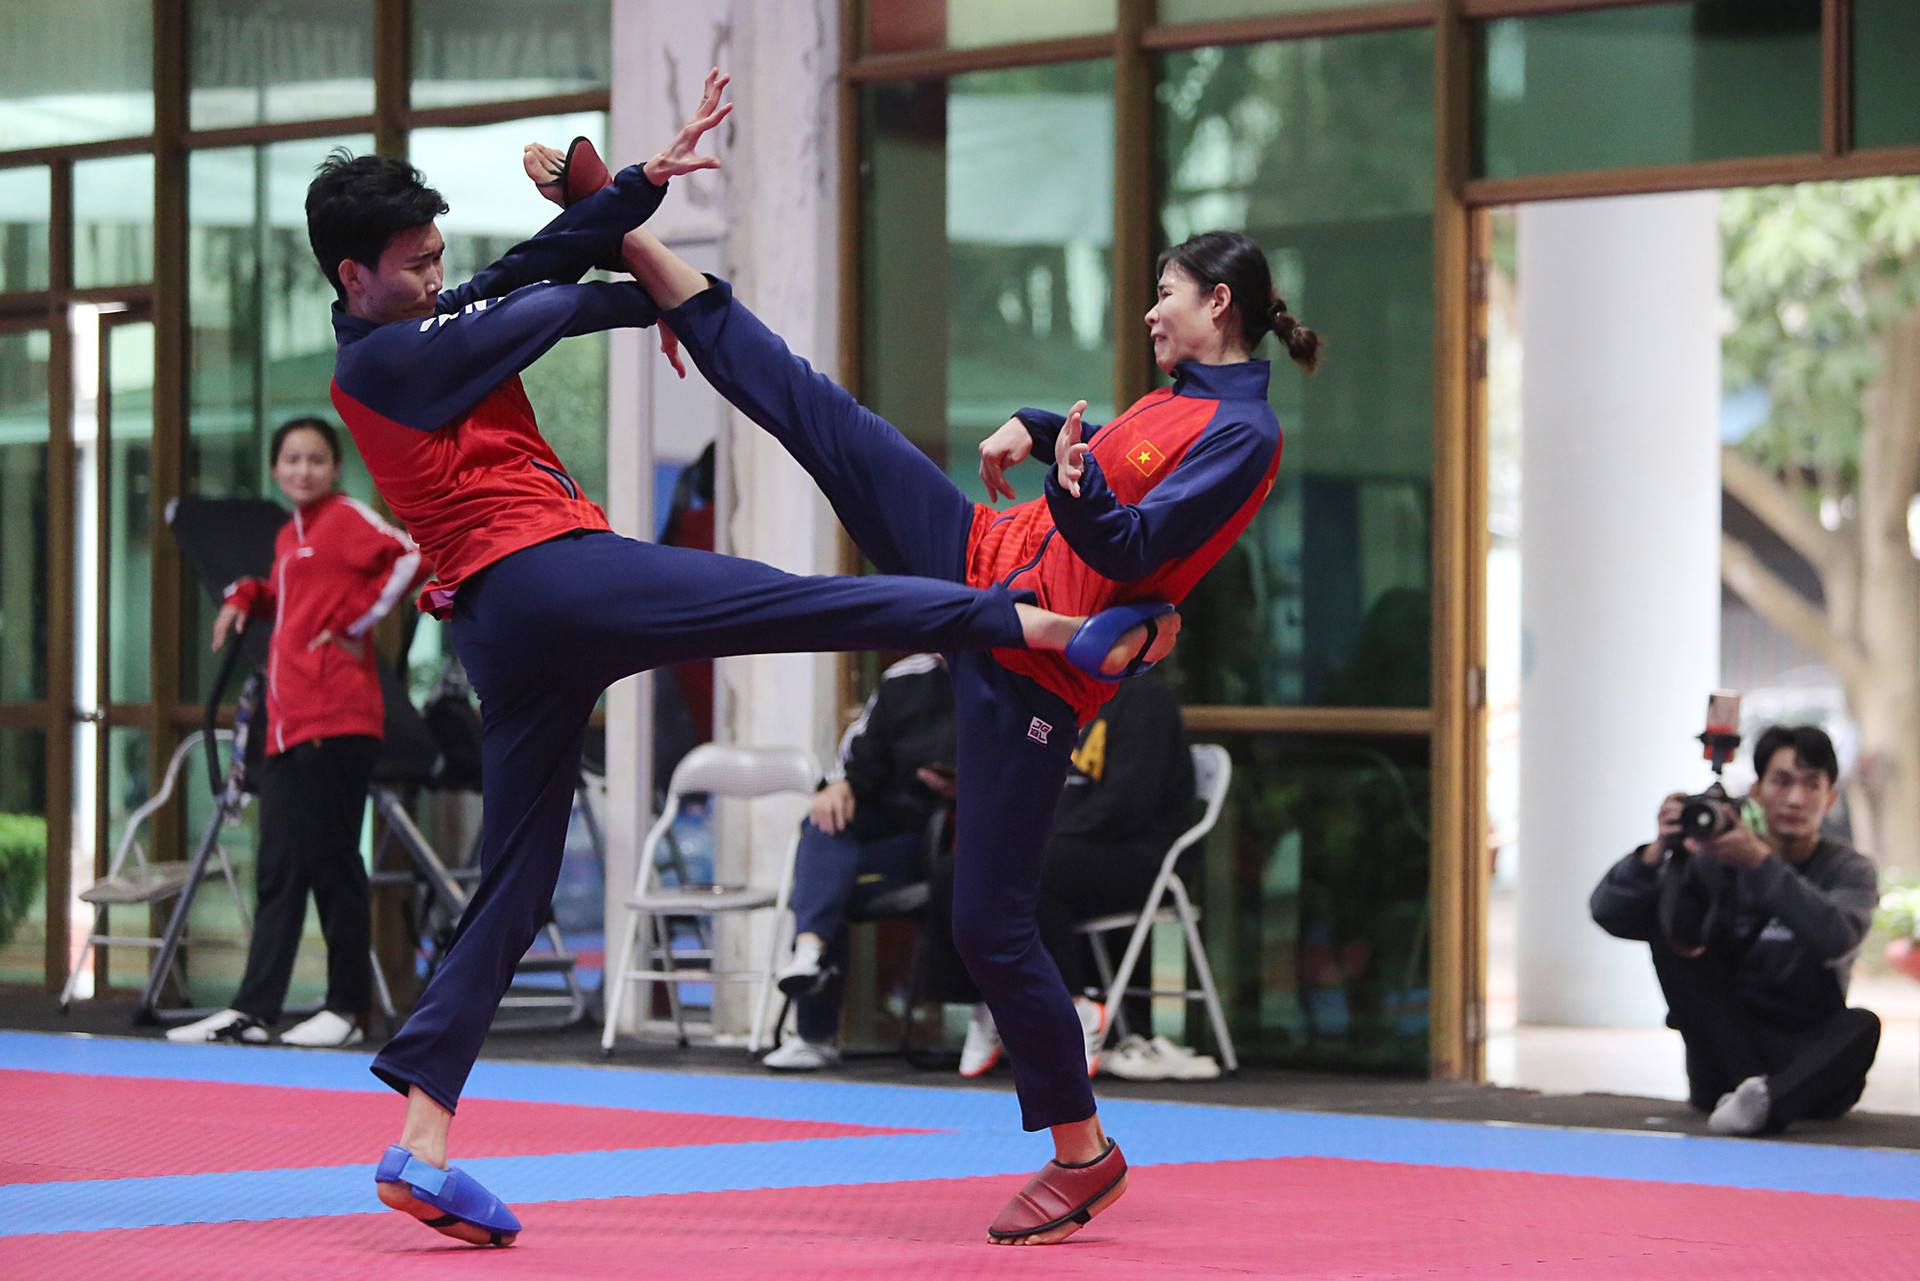 Với các môn thể thao trong nhà, các võ sĩ đội tuyển taekwondo Việt Nam cũng phải mặc nhiều lớp quần áo giữ ấm cơ thể - Ảnh: HOÀNG TÙNG